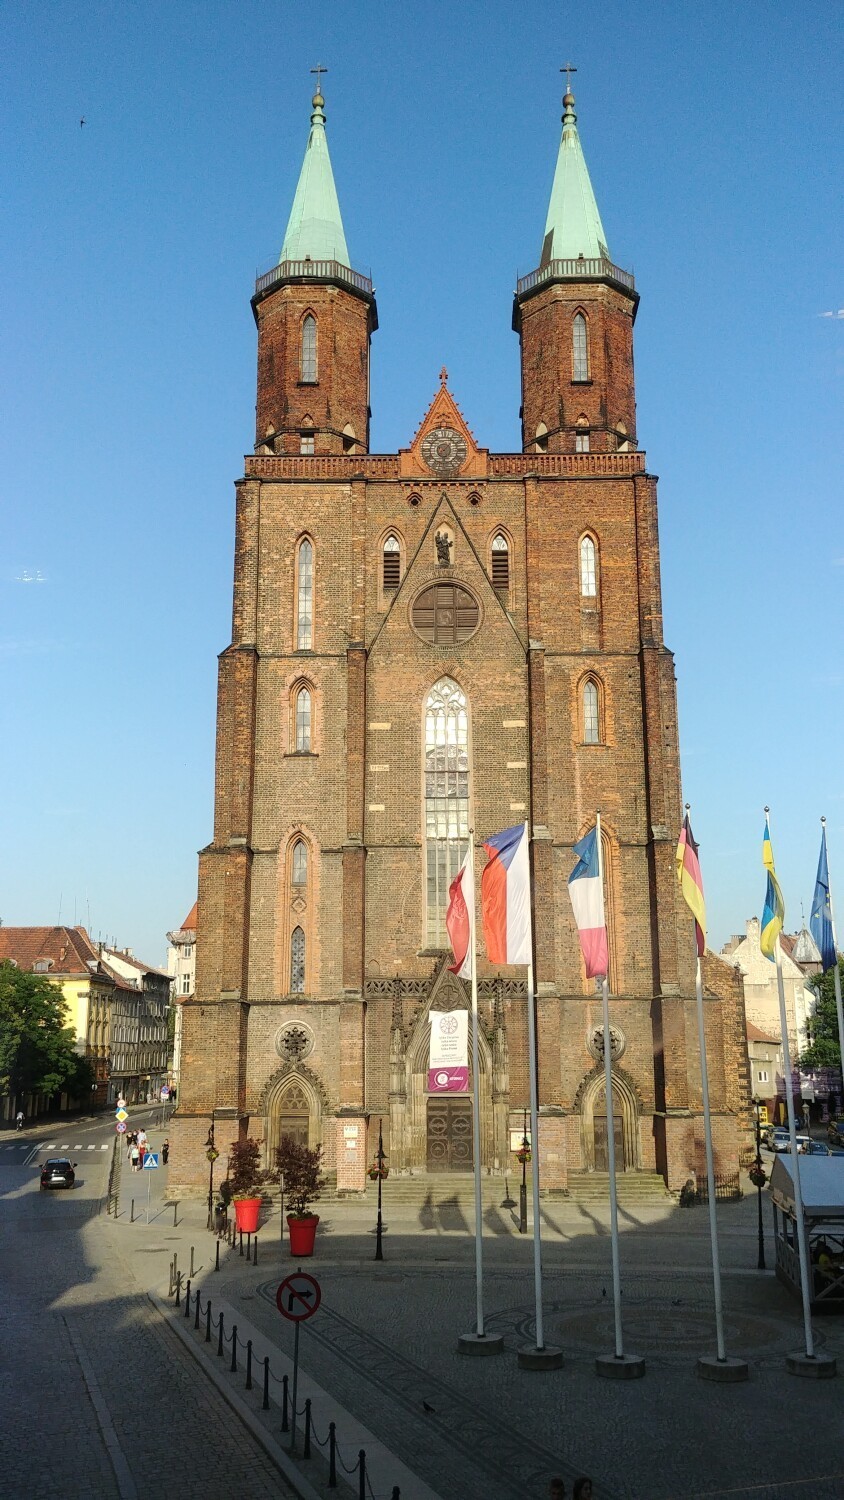 Od 1 maja można zwiedzać kościół Mariacki w Legnicy oraz wejść na wieżę widokową